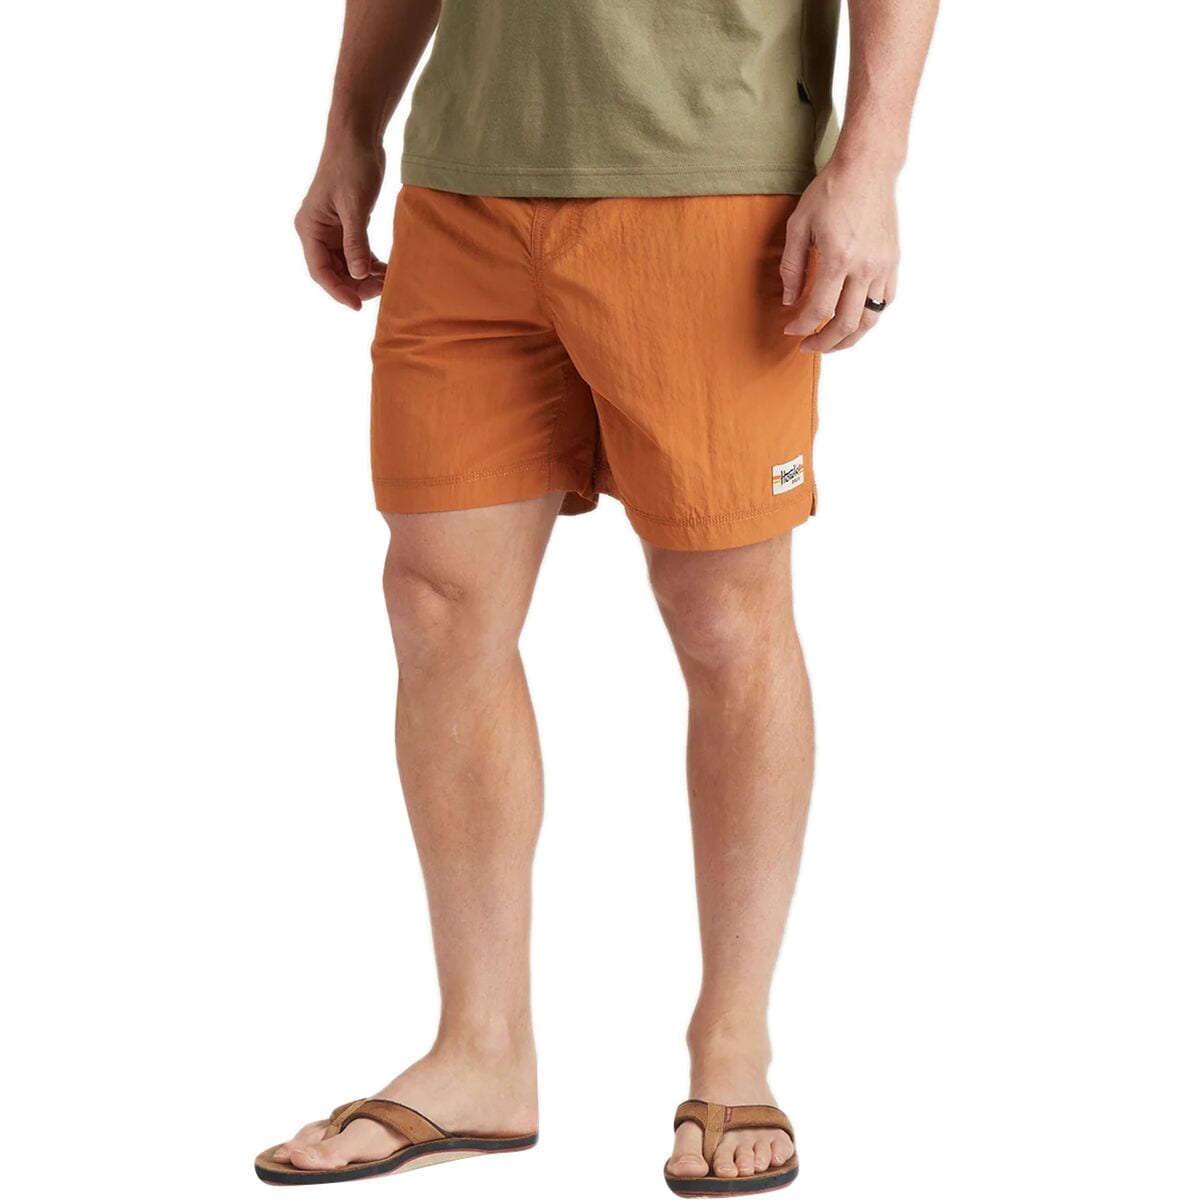 Salado Shorts - Men